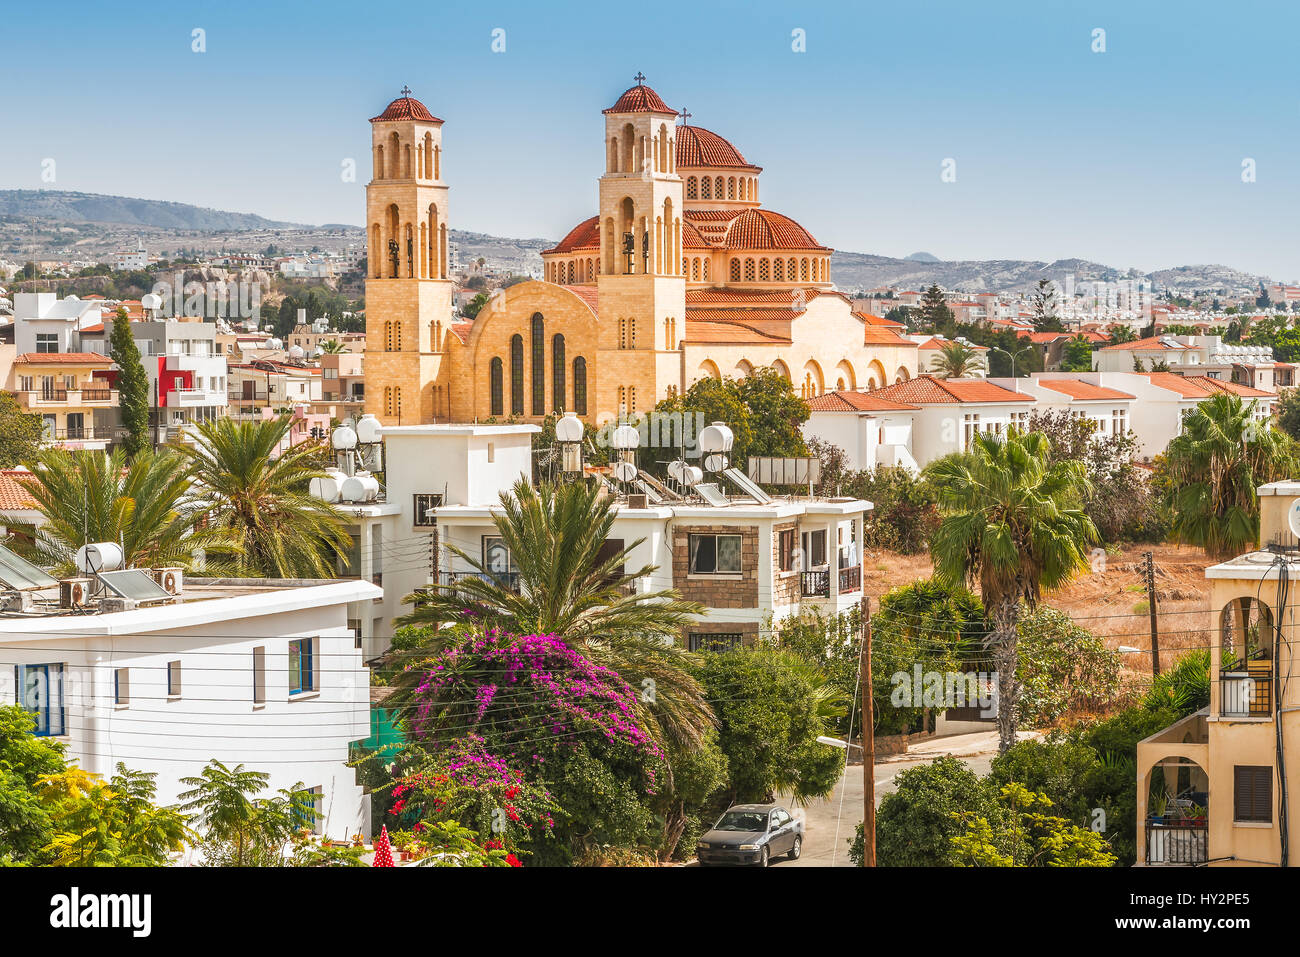 Blick auf die Stadt von Paphos in Zypern. Paphos ist bekannt als das Zentrum der antiken Geschichte und Kultur der Insel. Stockfoto